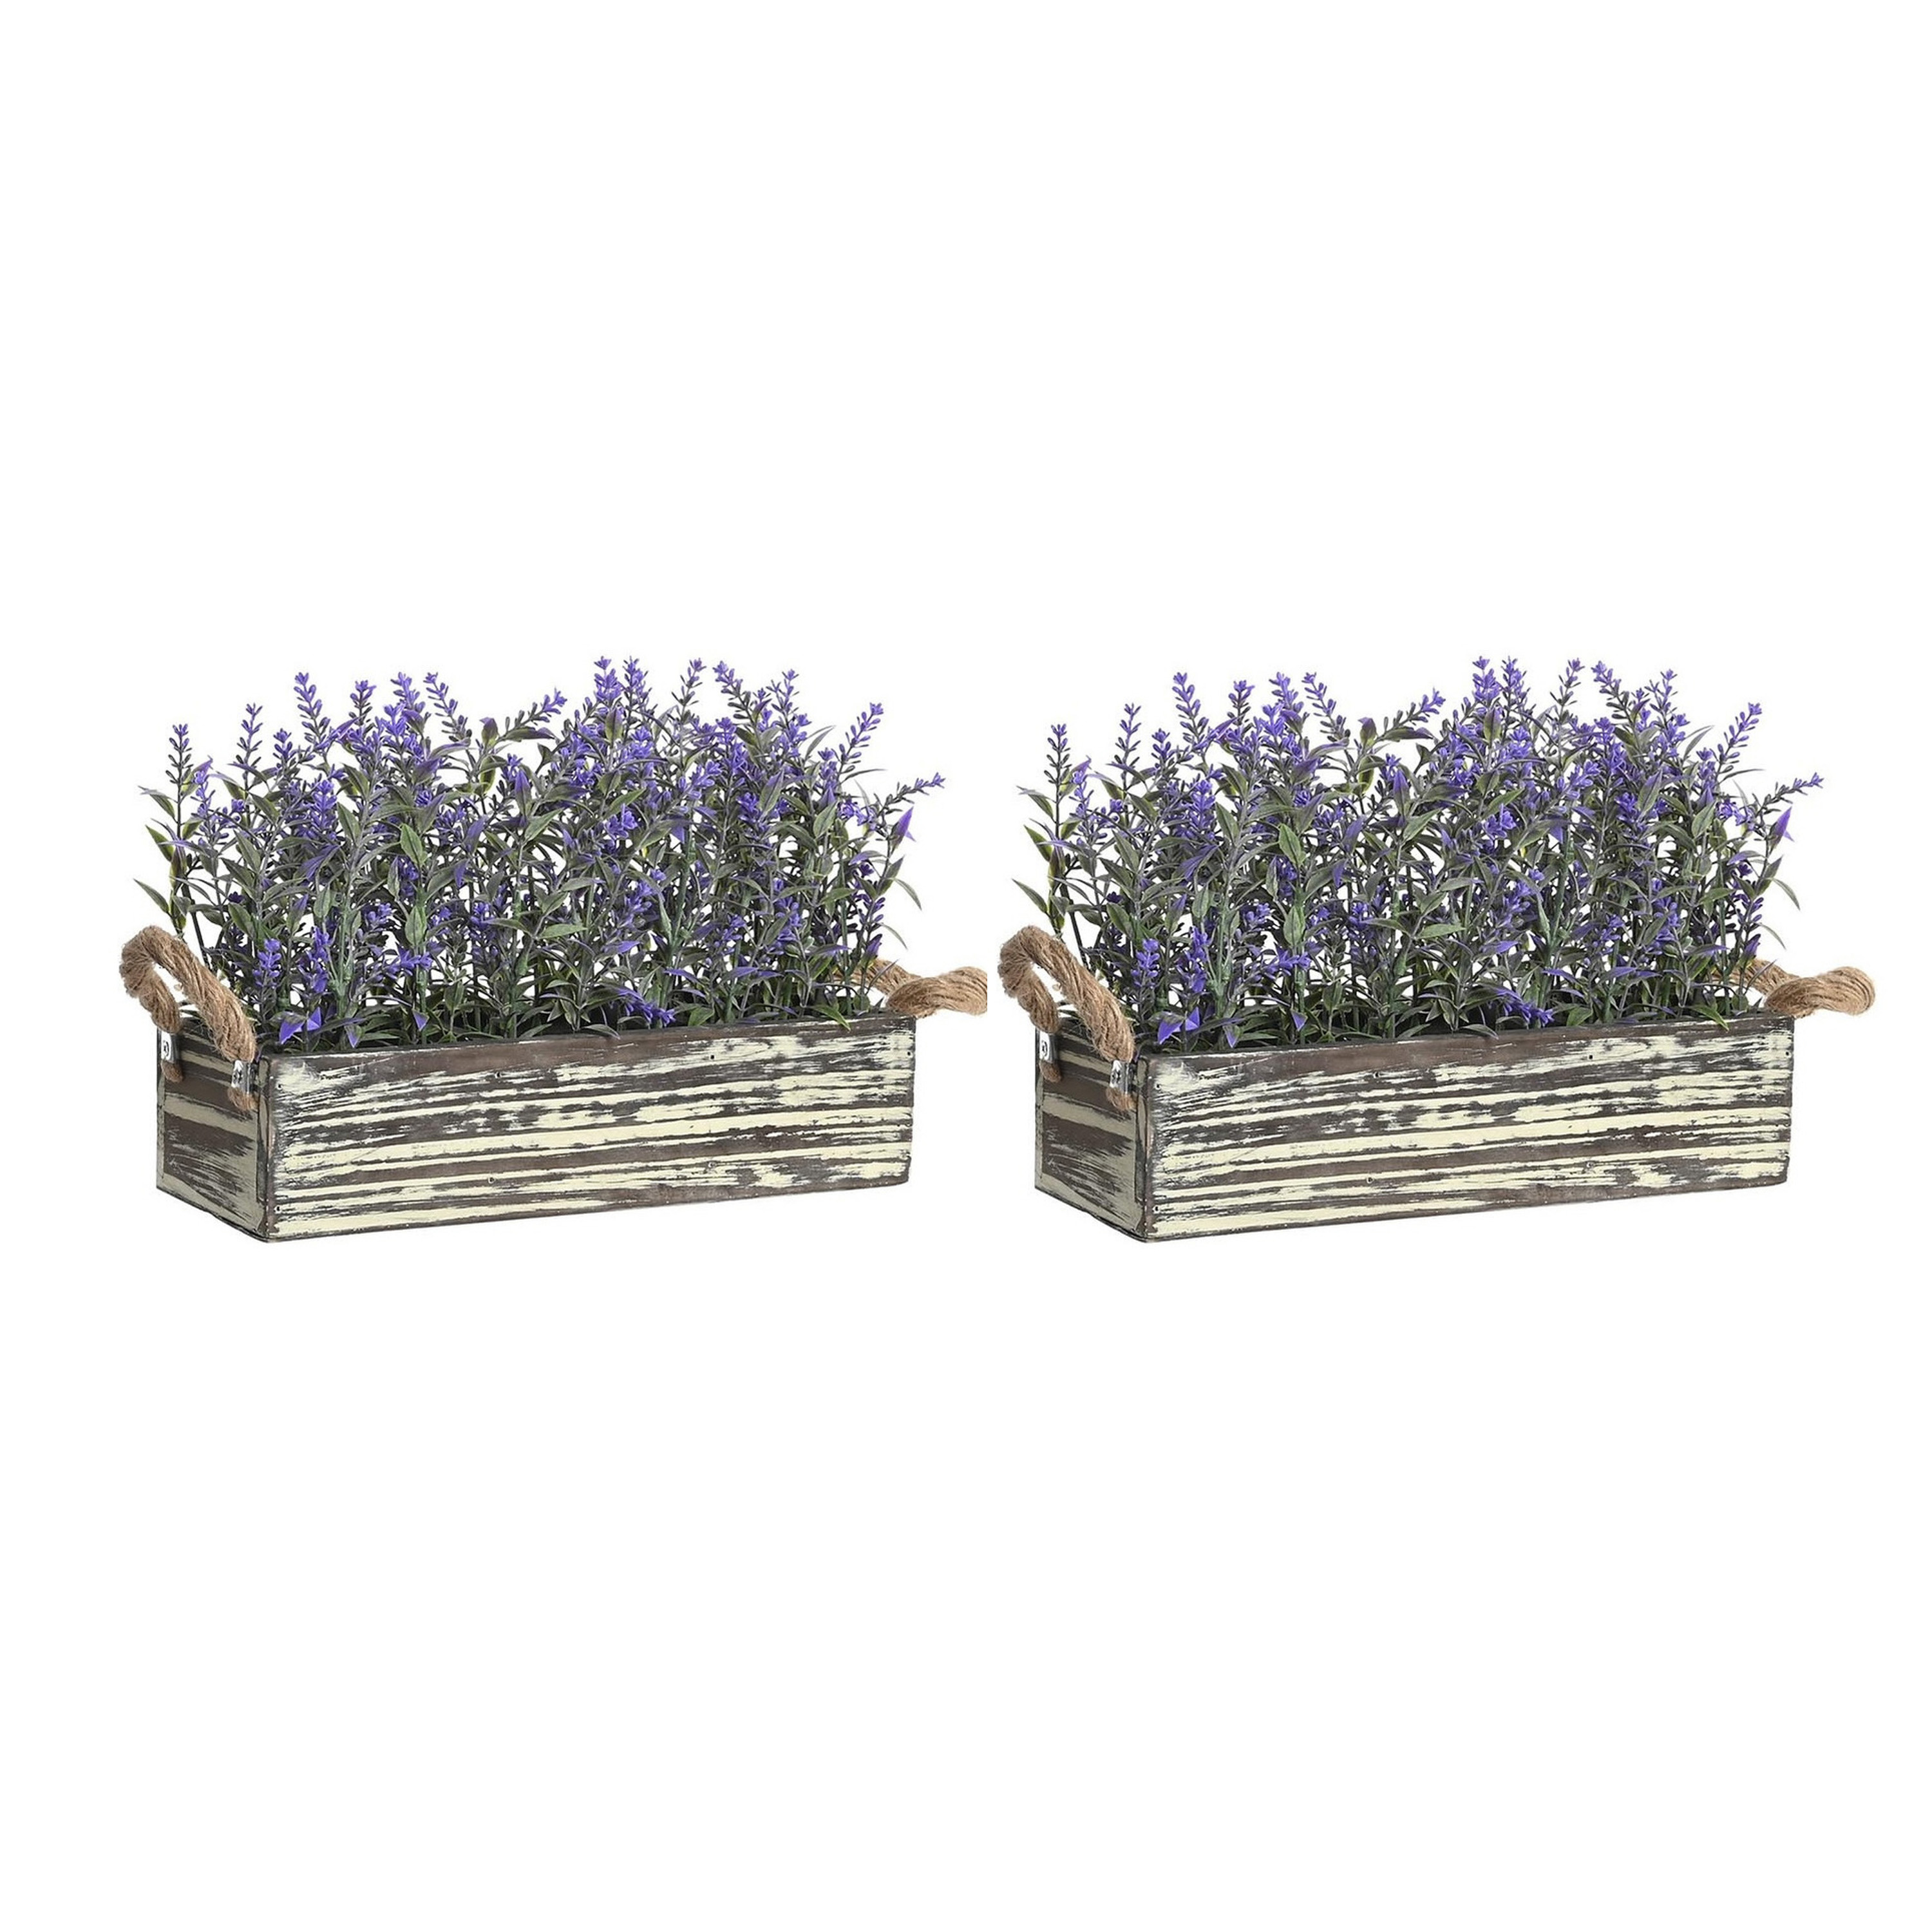 Items Lavendel bloemen kunstplant in bloembak - 2x - donkerpaarse bloemen - 30 x 12 x 21 cm - bloemstukje -